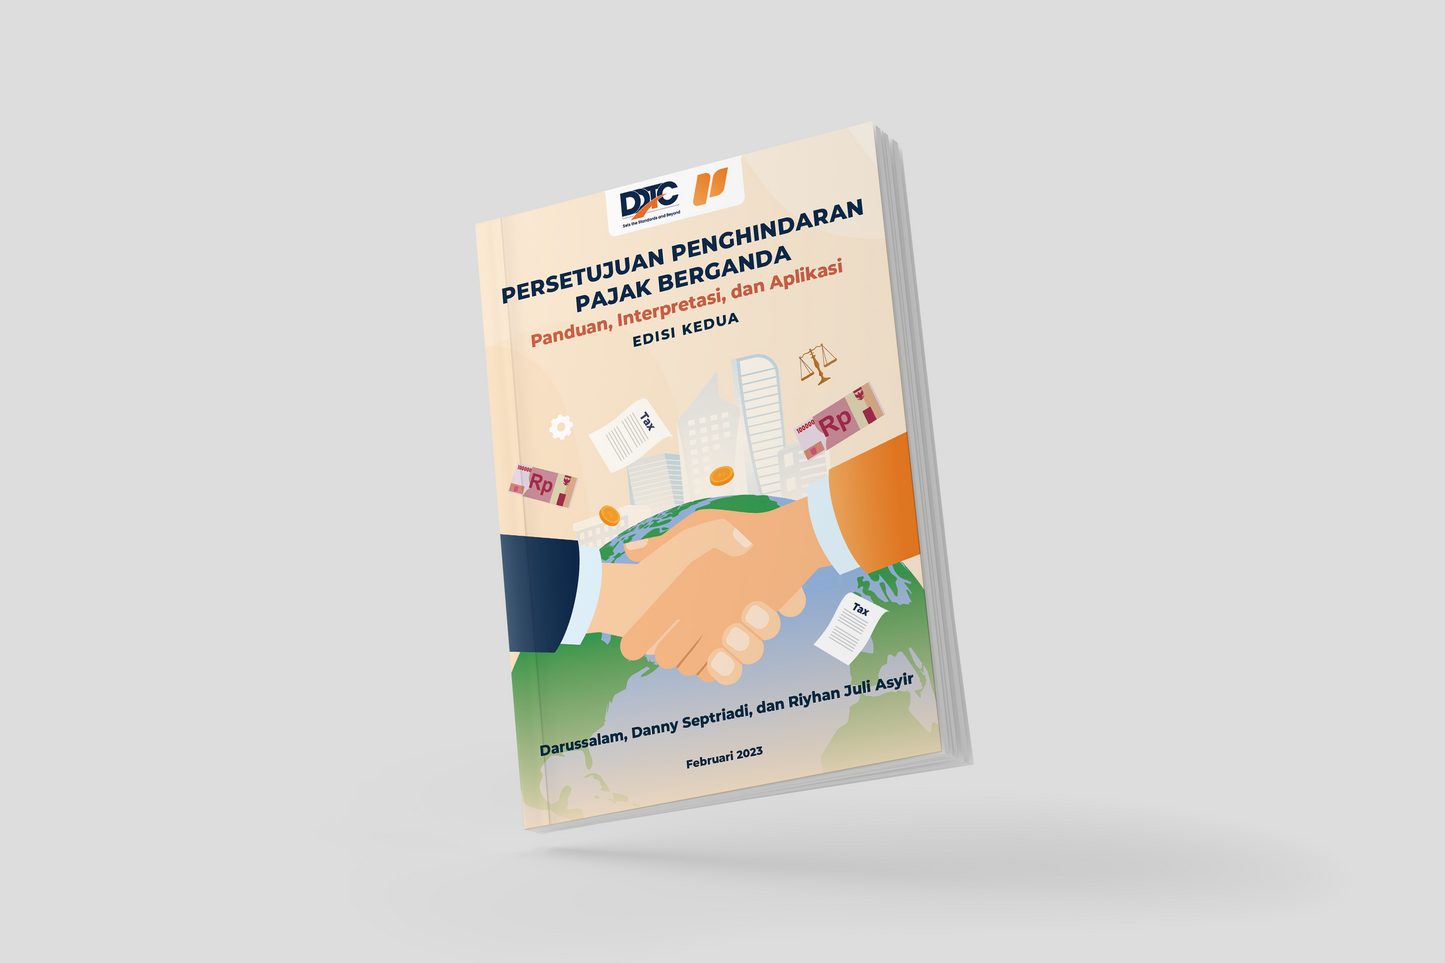 Buku Persetujuan Penghindaran Pajak Berganda: Panduan, Interpretasi, dan Aplikasi (Edisi Kedua) + Perpajakan DDTC Premium Satu Tahun